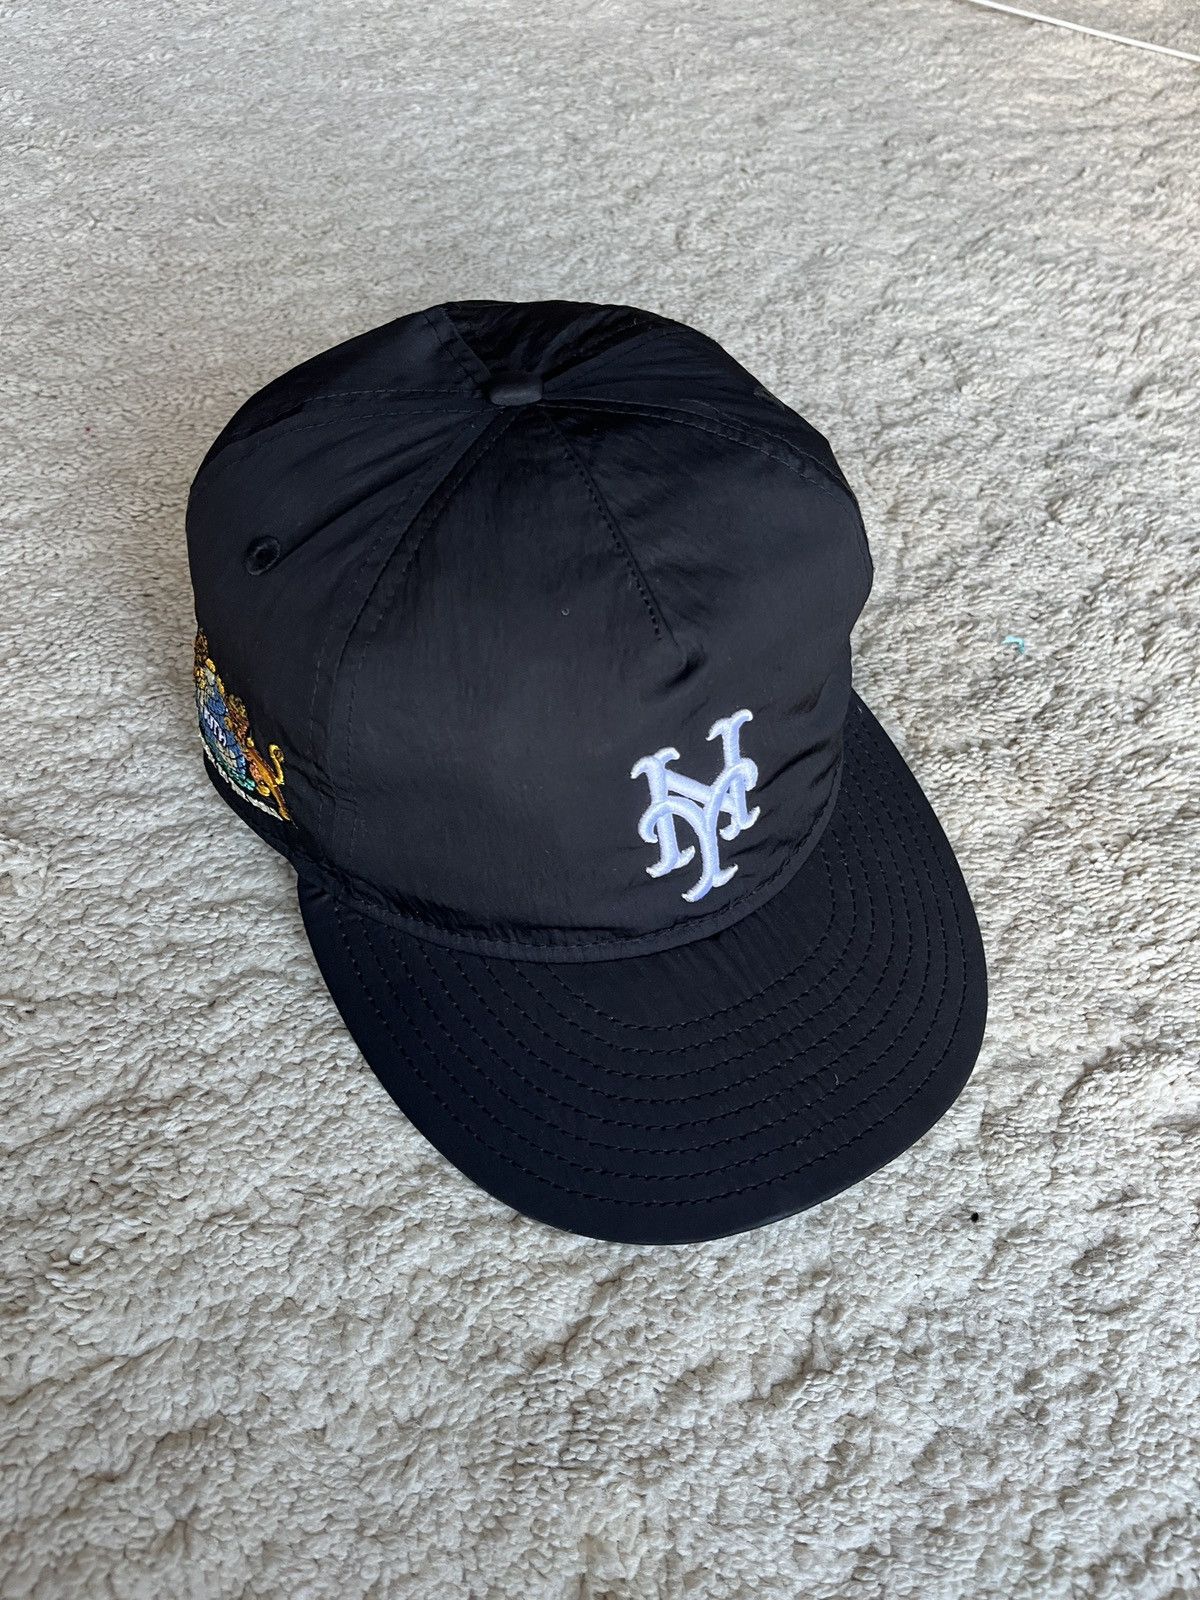 Kith Kith New York Mets Nylon SnapBack Cap | Grailed